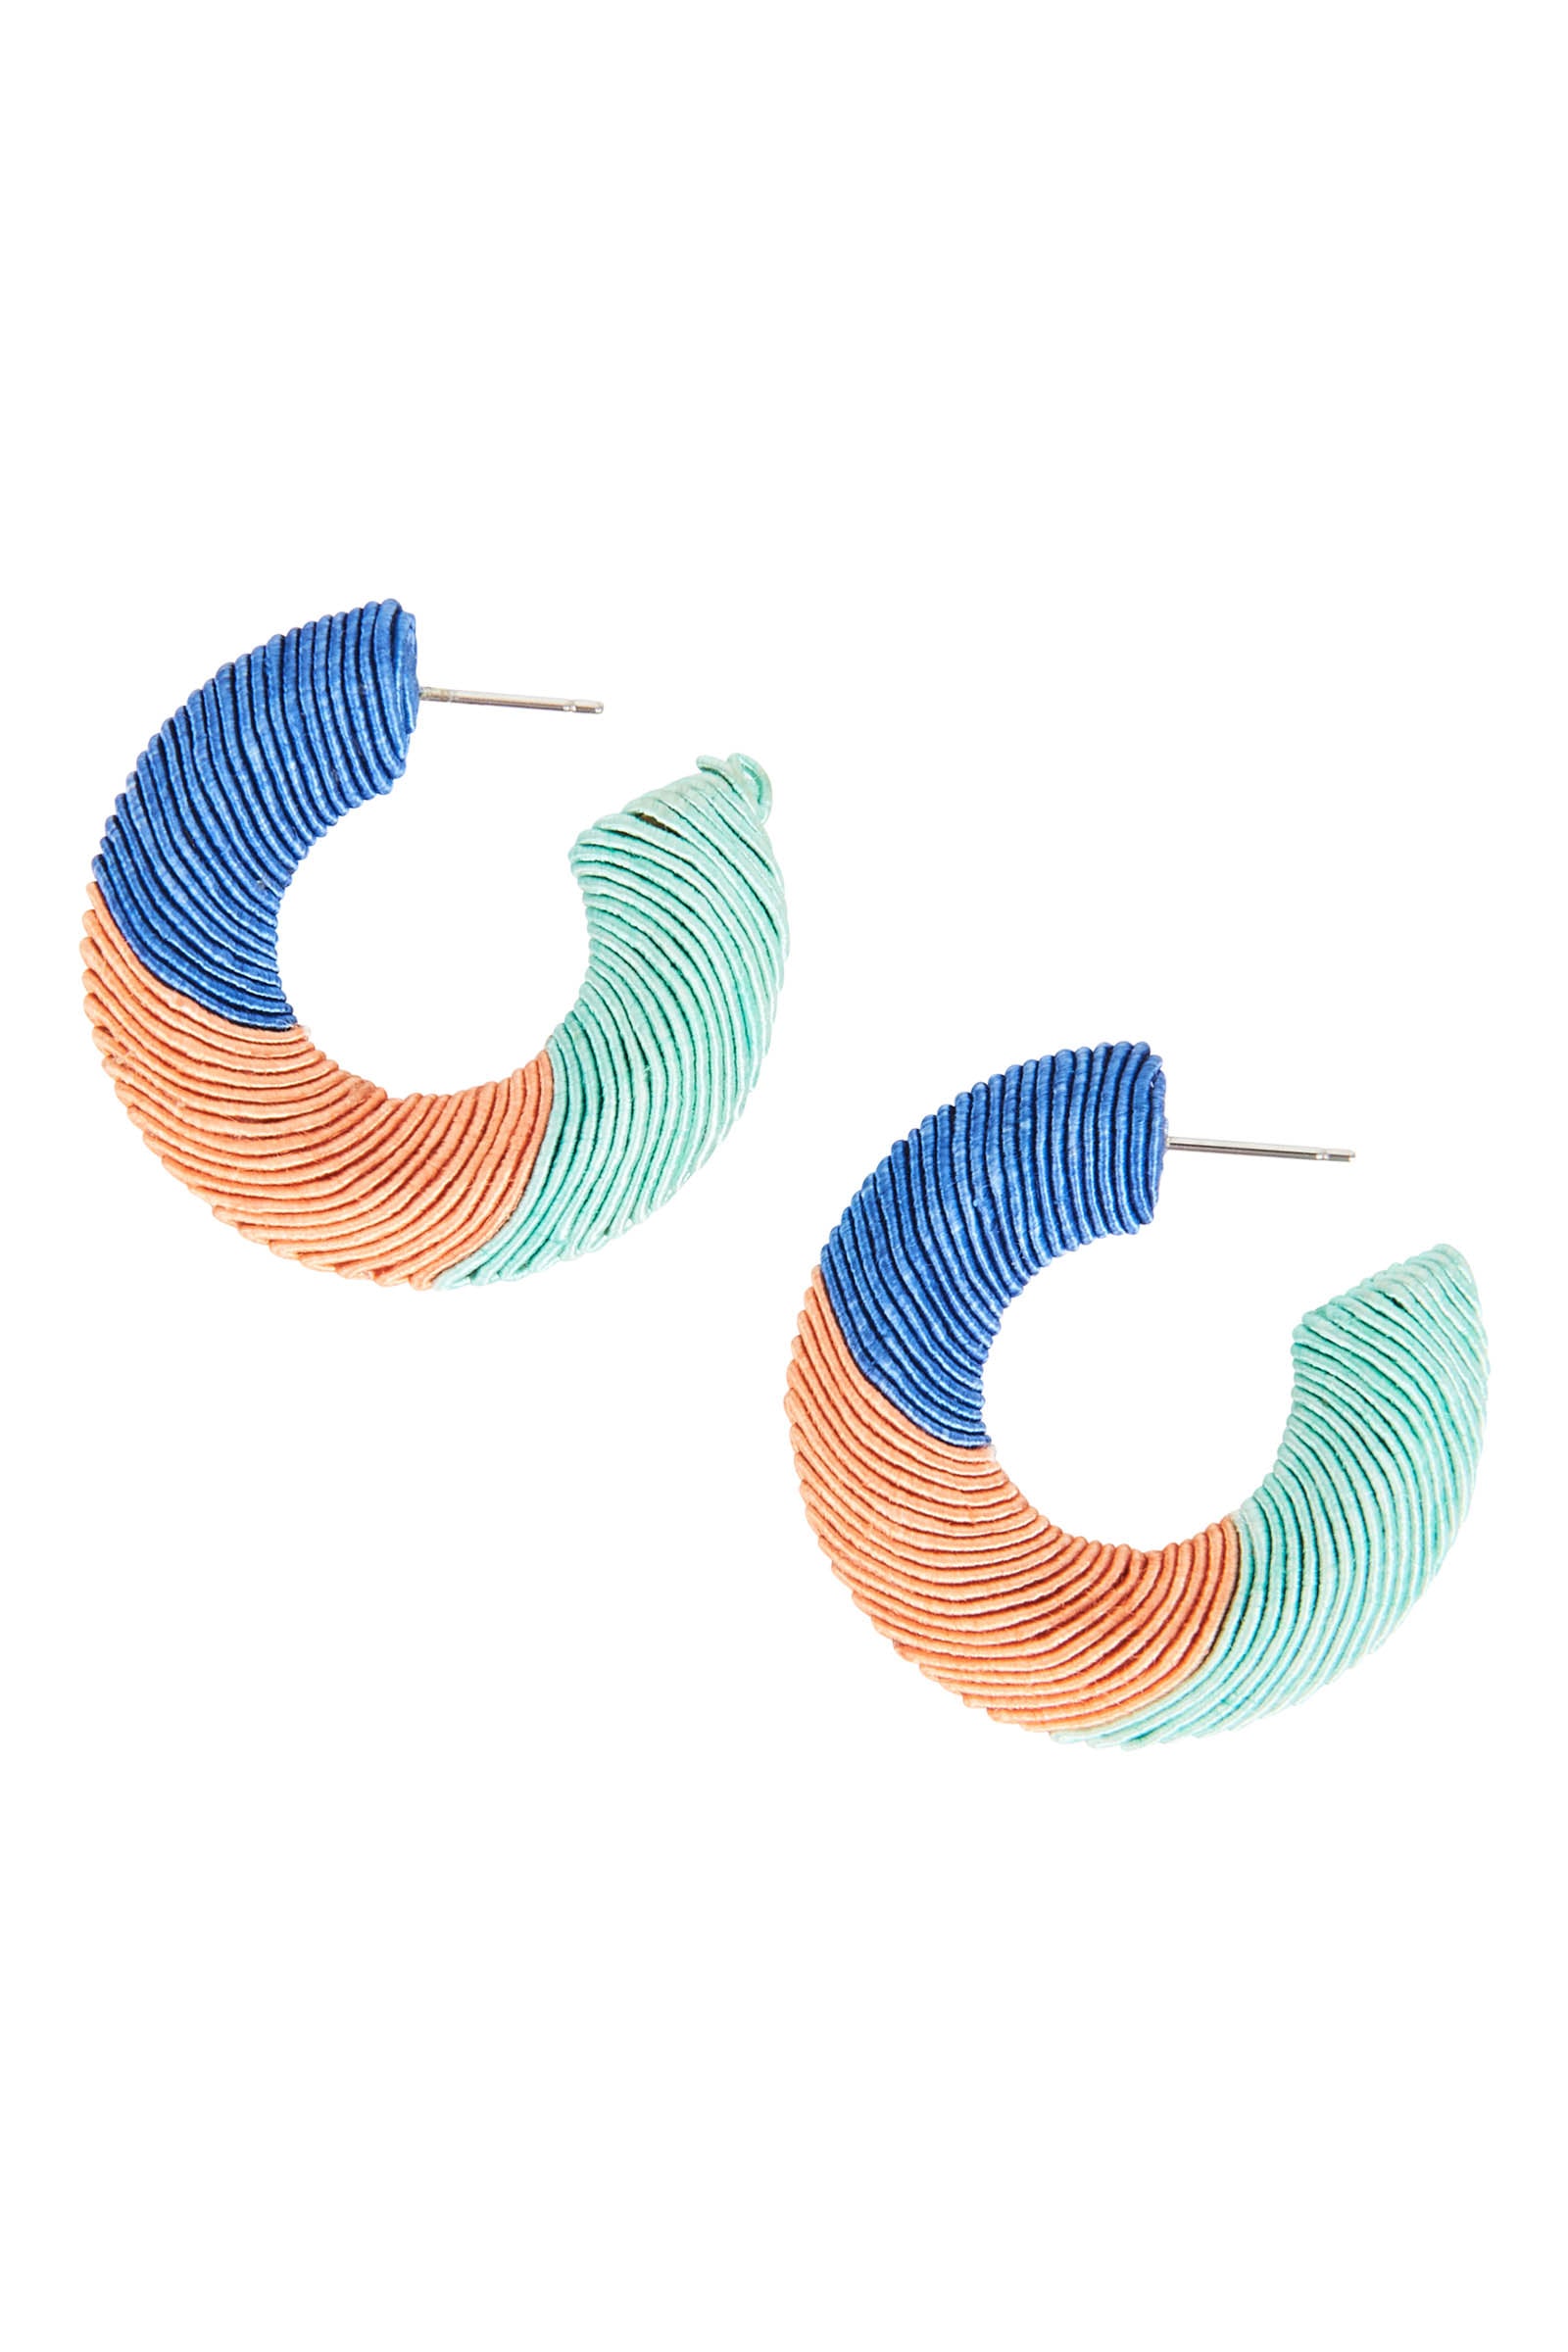 Rove Hoop Earring - Cobalt/Coral - eb&ive Earring